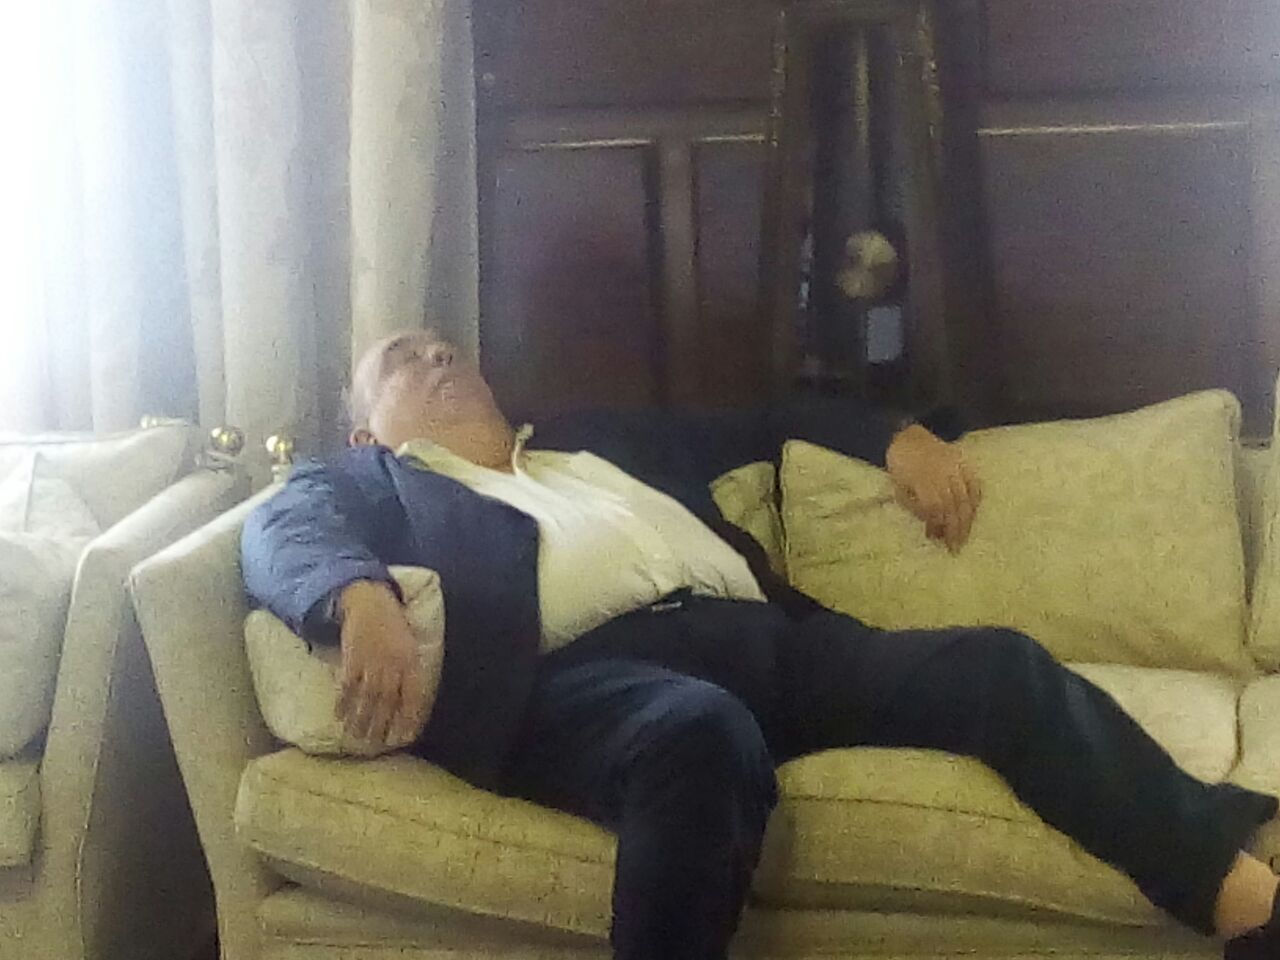 Roberto Fernández dormido en una imagen que circula por las redes